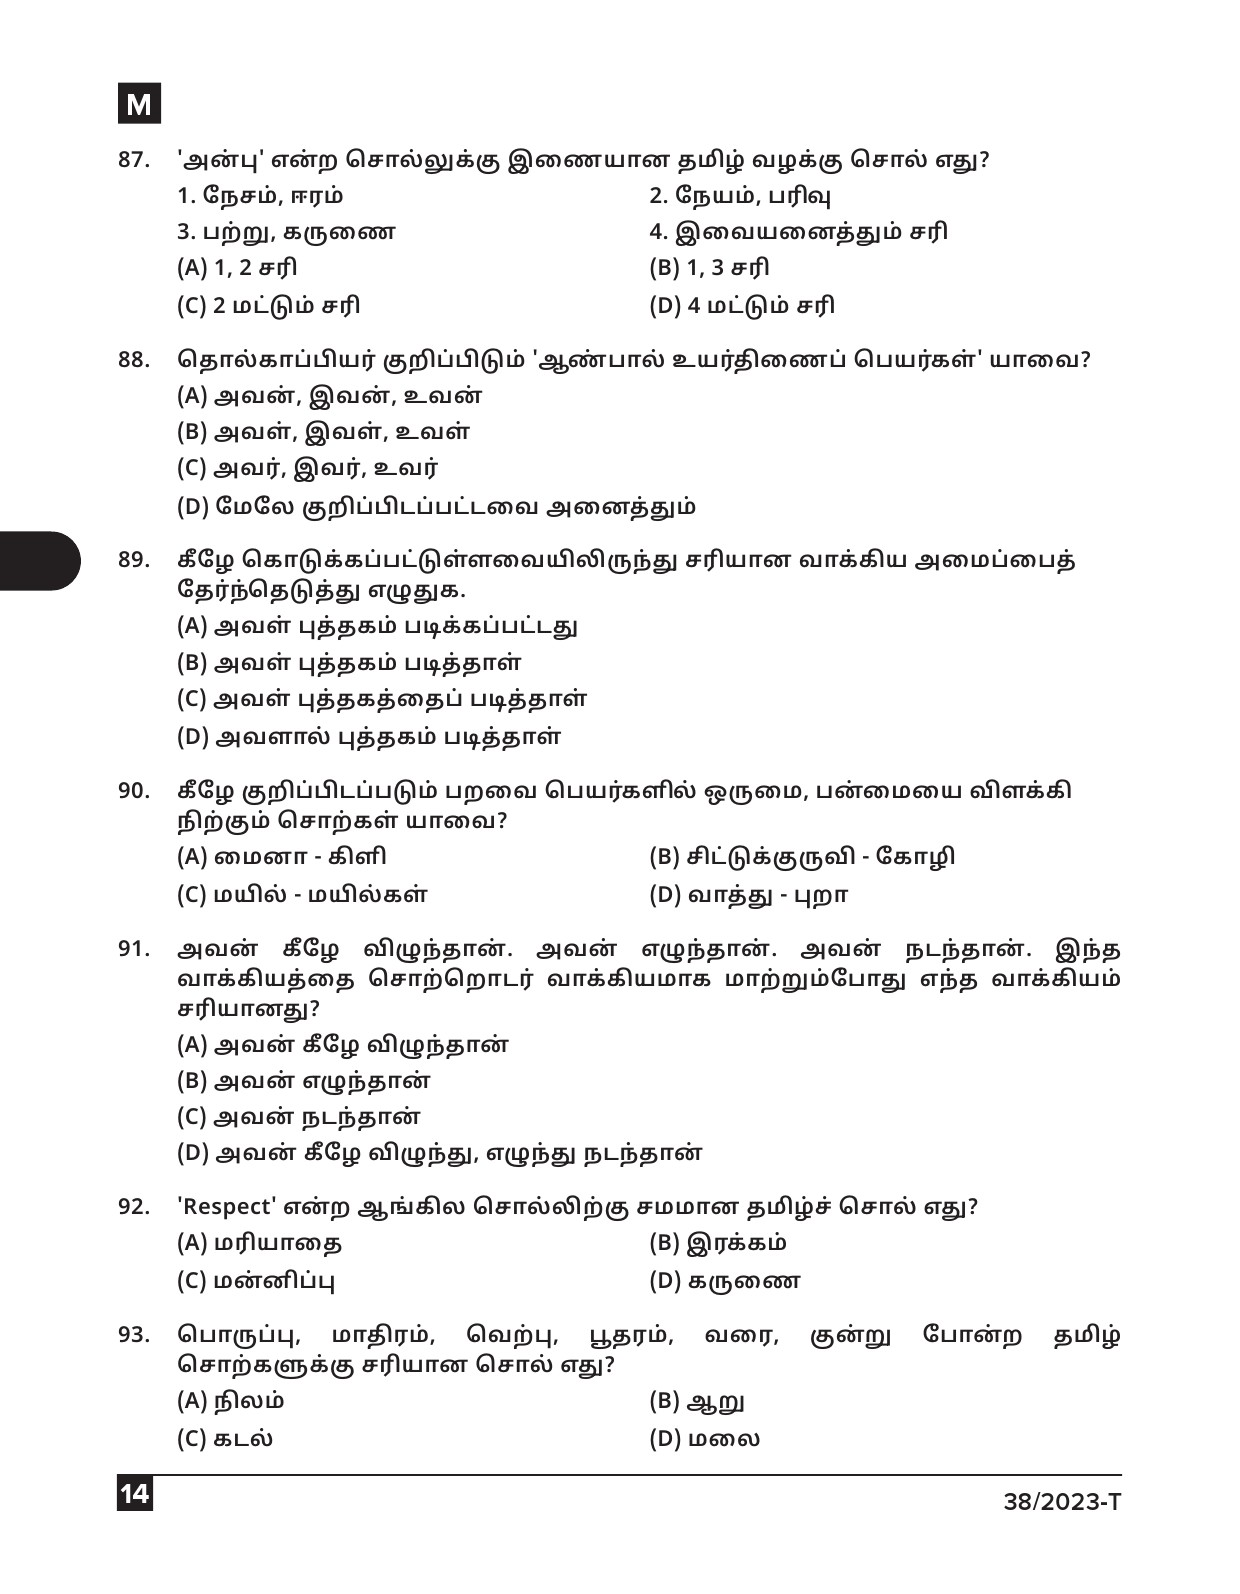 KPSC Junior Typist Tamil Exam 2023 Code 0382023 T 13